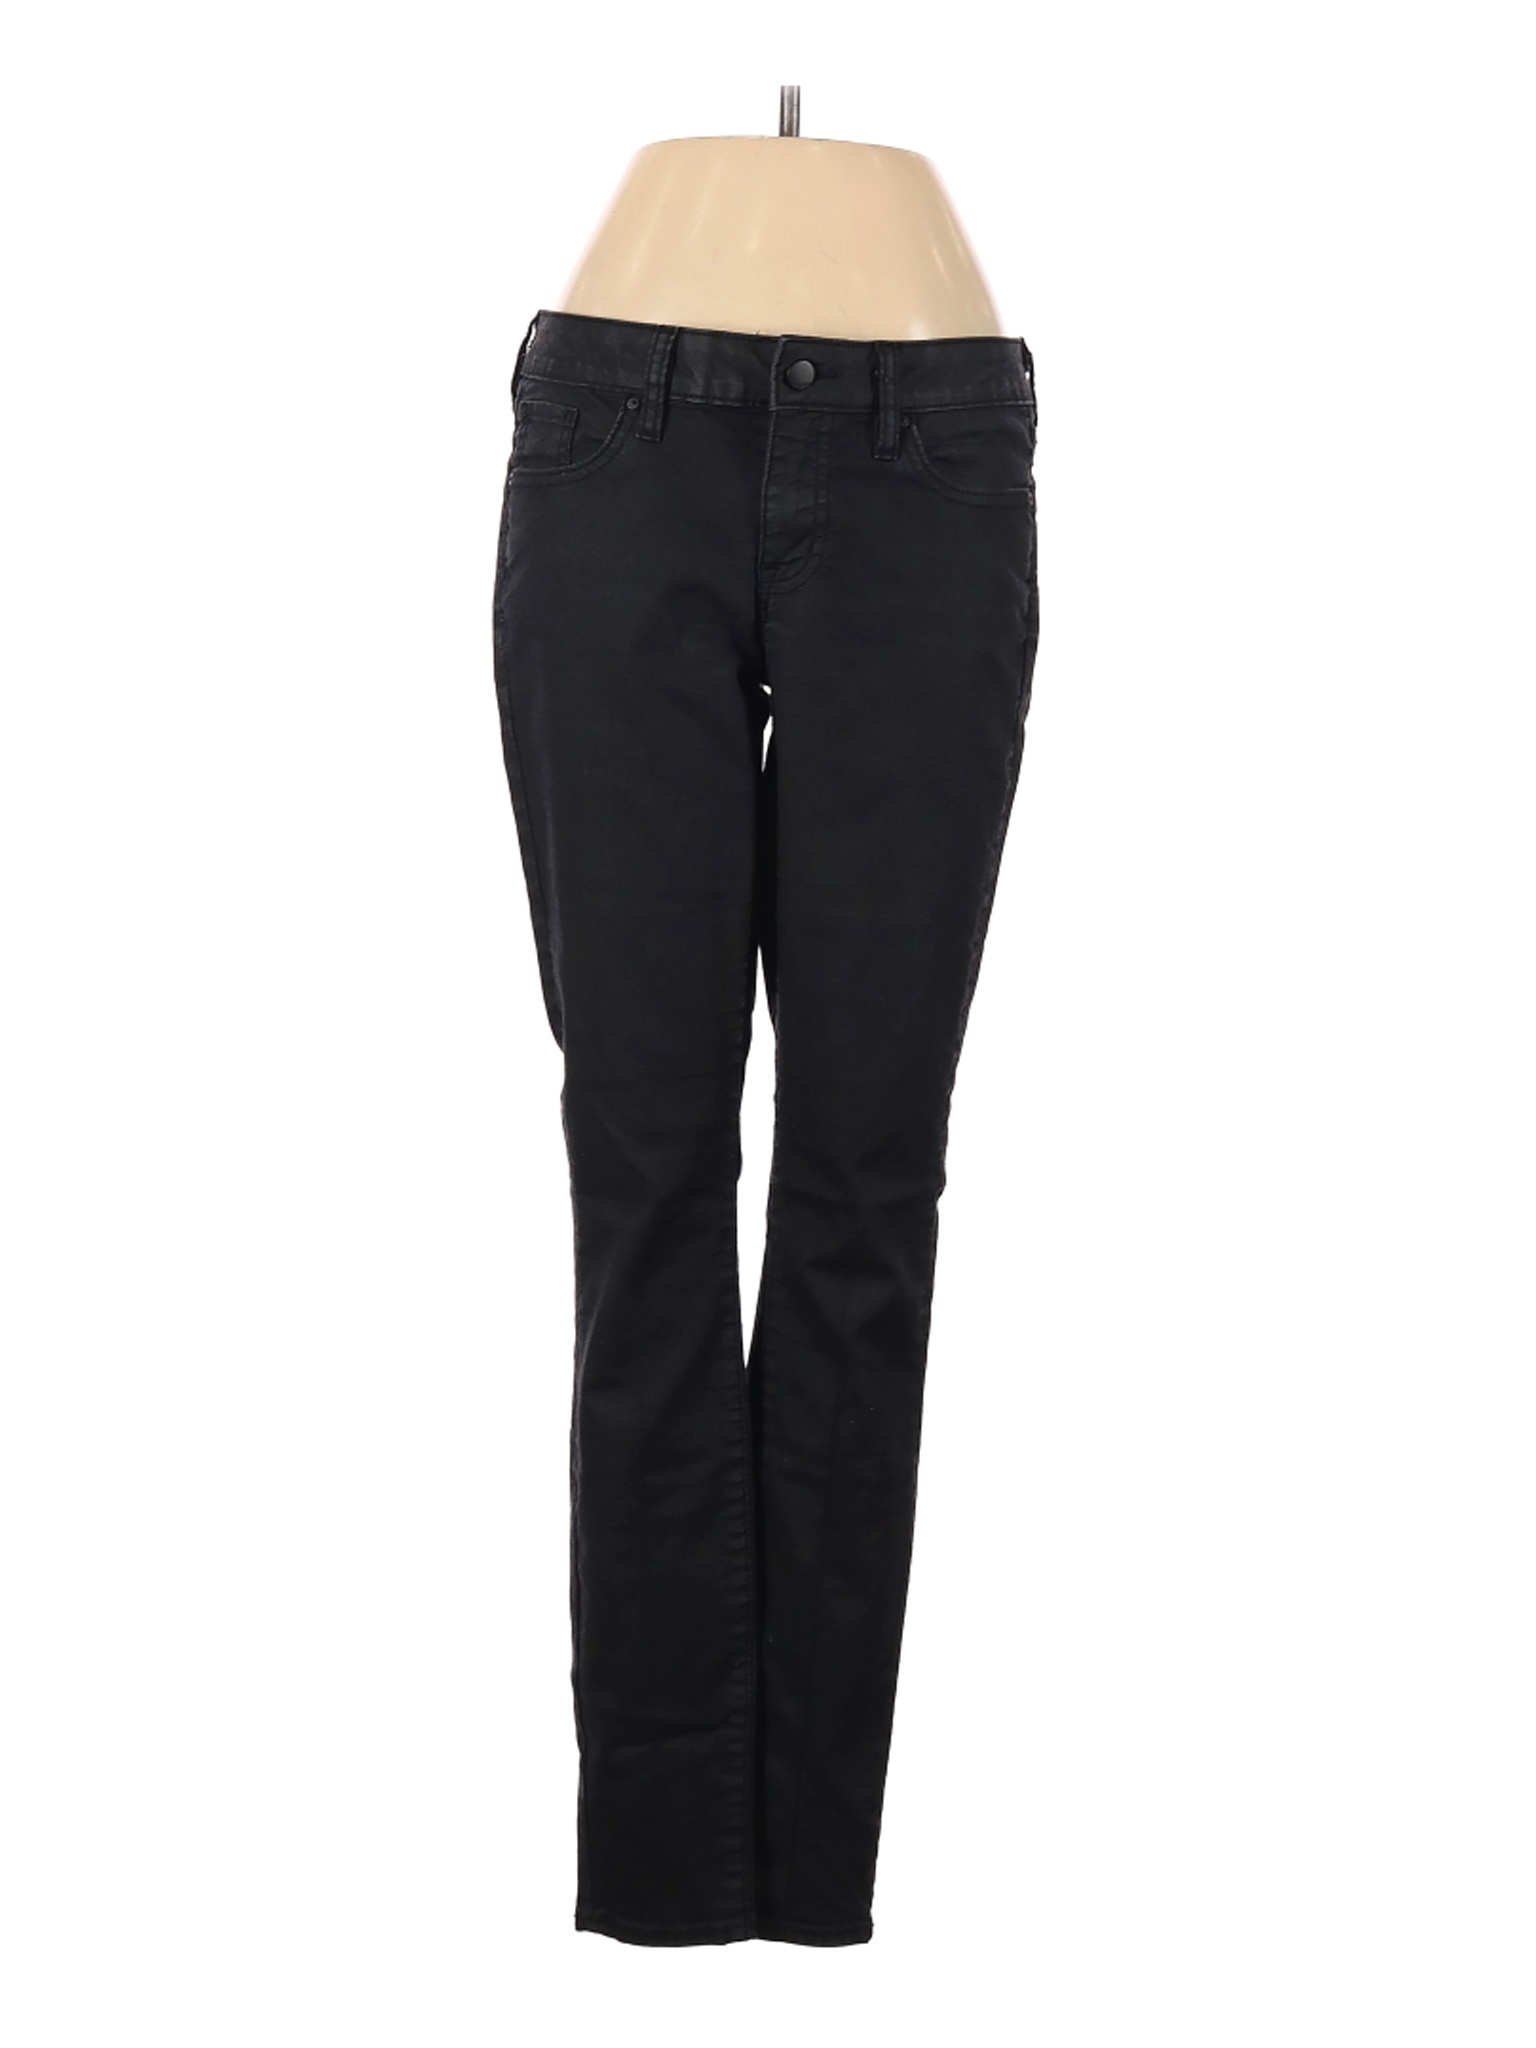 Gap Outlet Women Black Jeans 4 | eBay